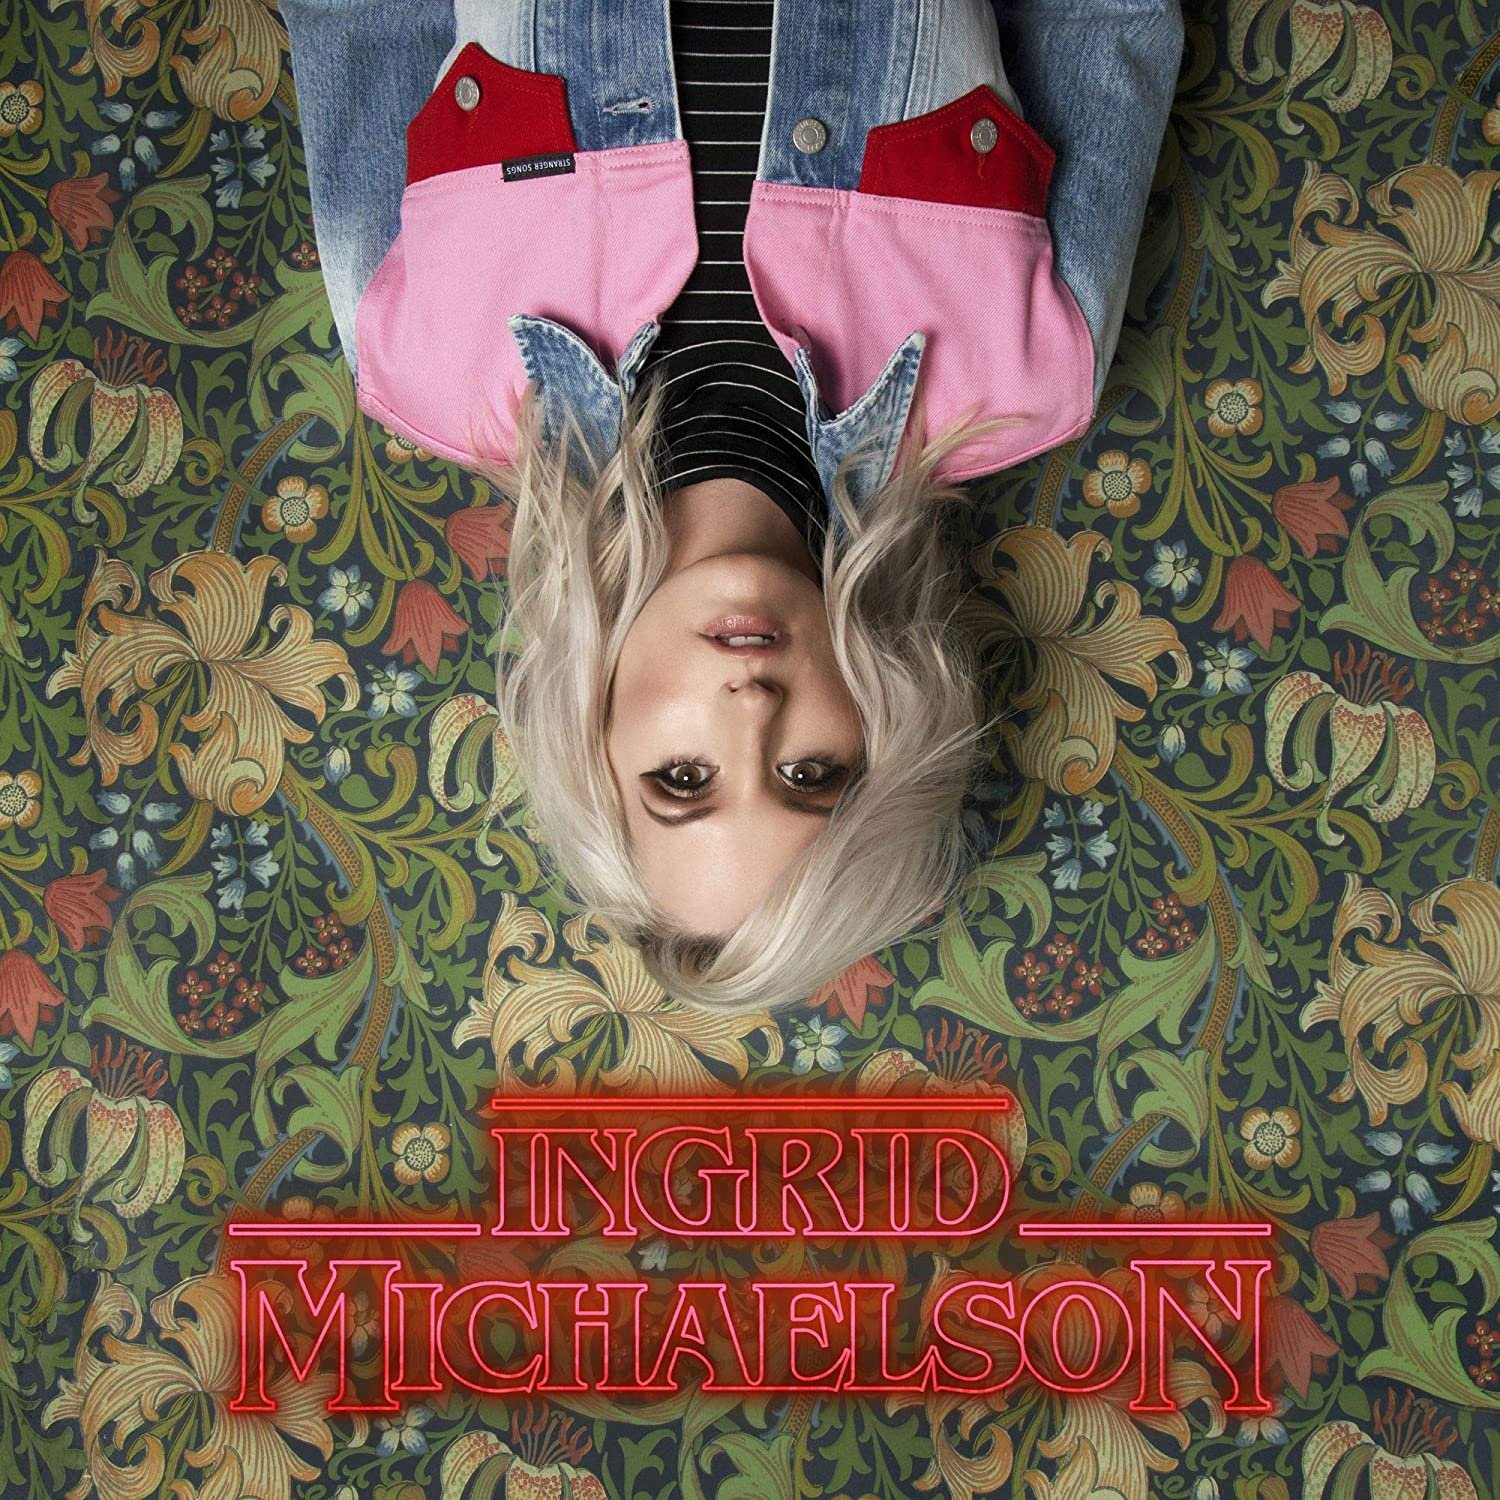 Stranger Songs - Ingrid Michaelson